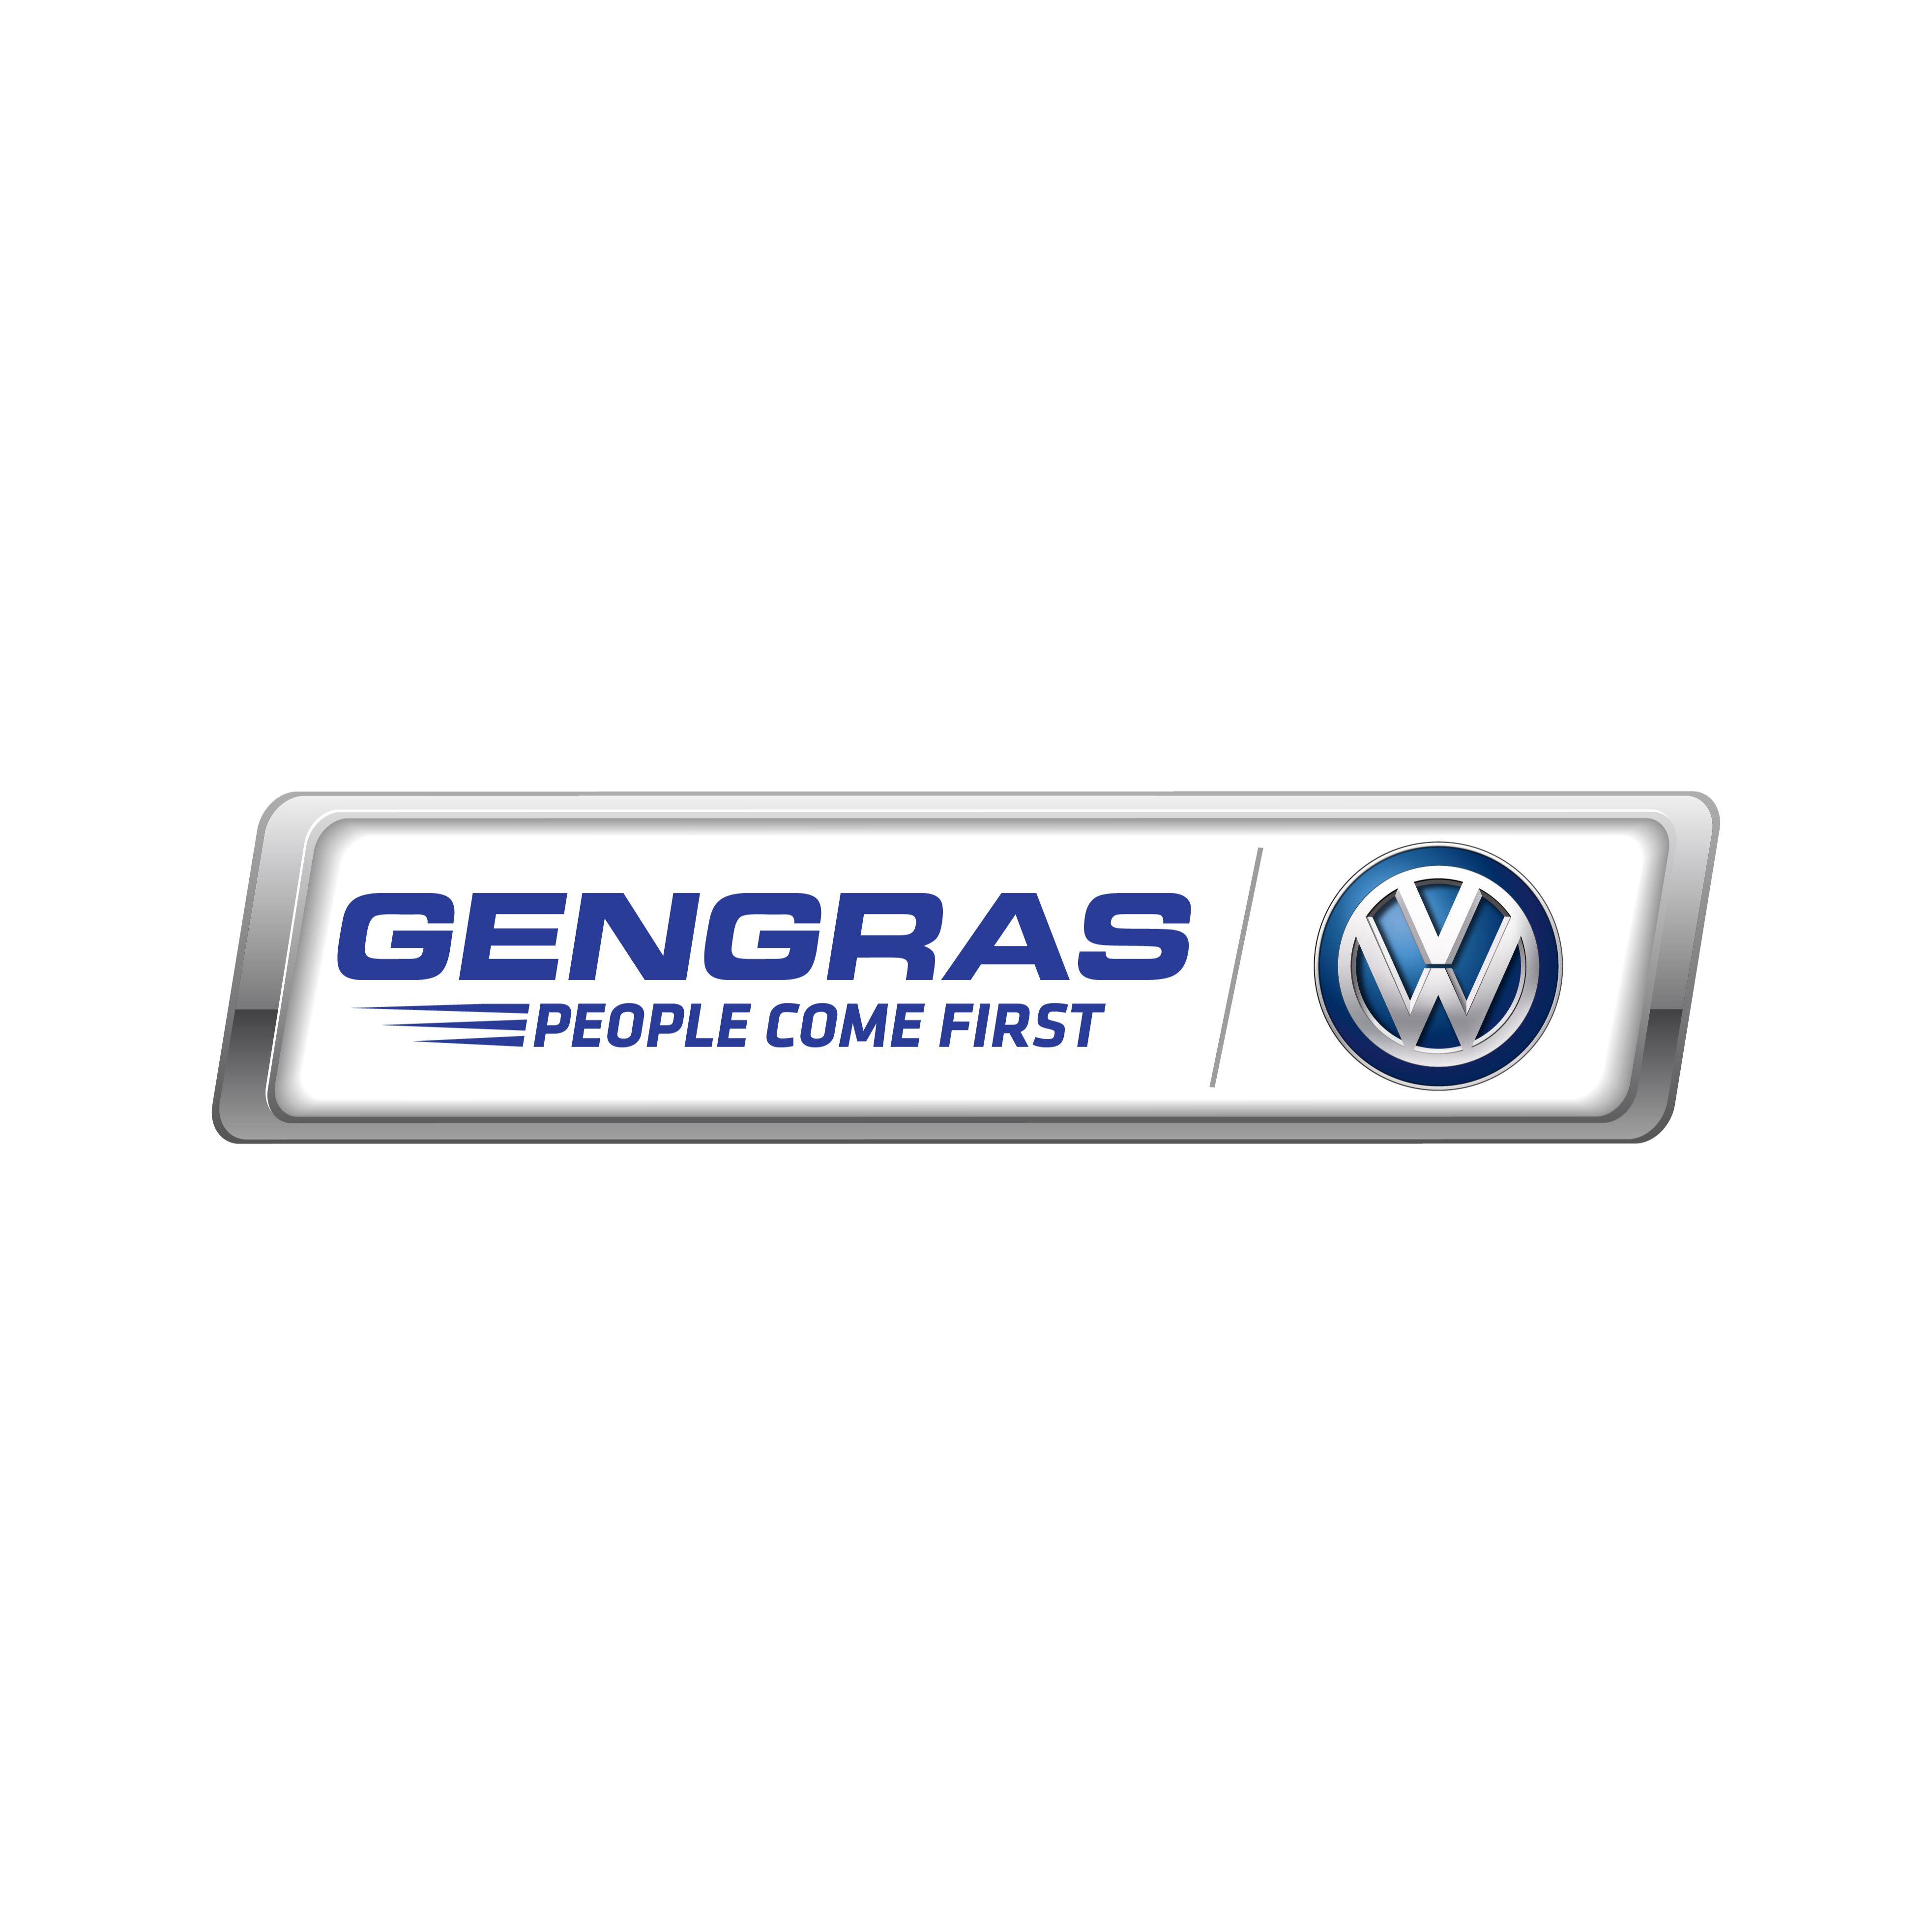 Gengras Volkswagen Plainville (860)410-2000